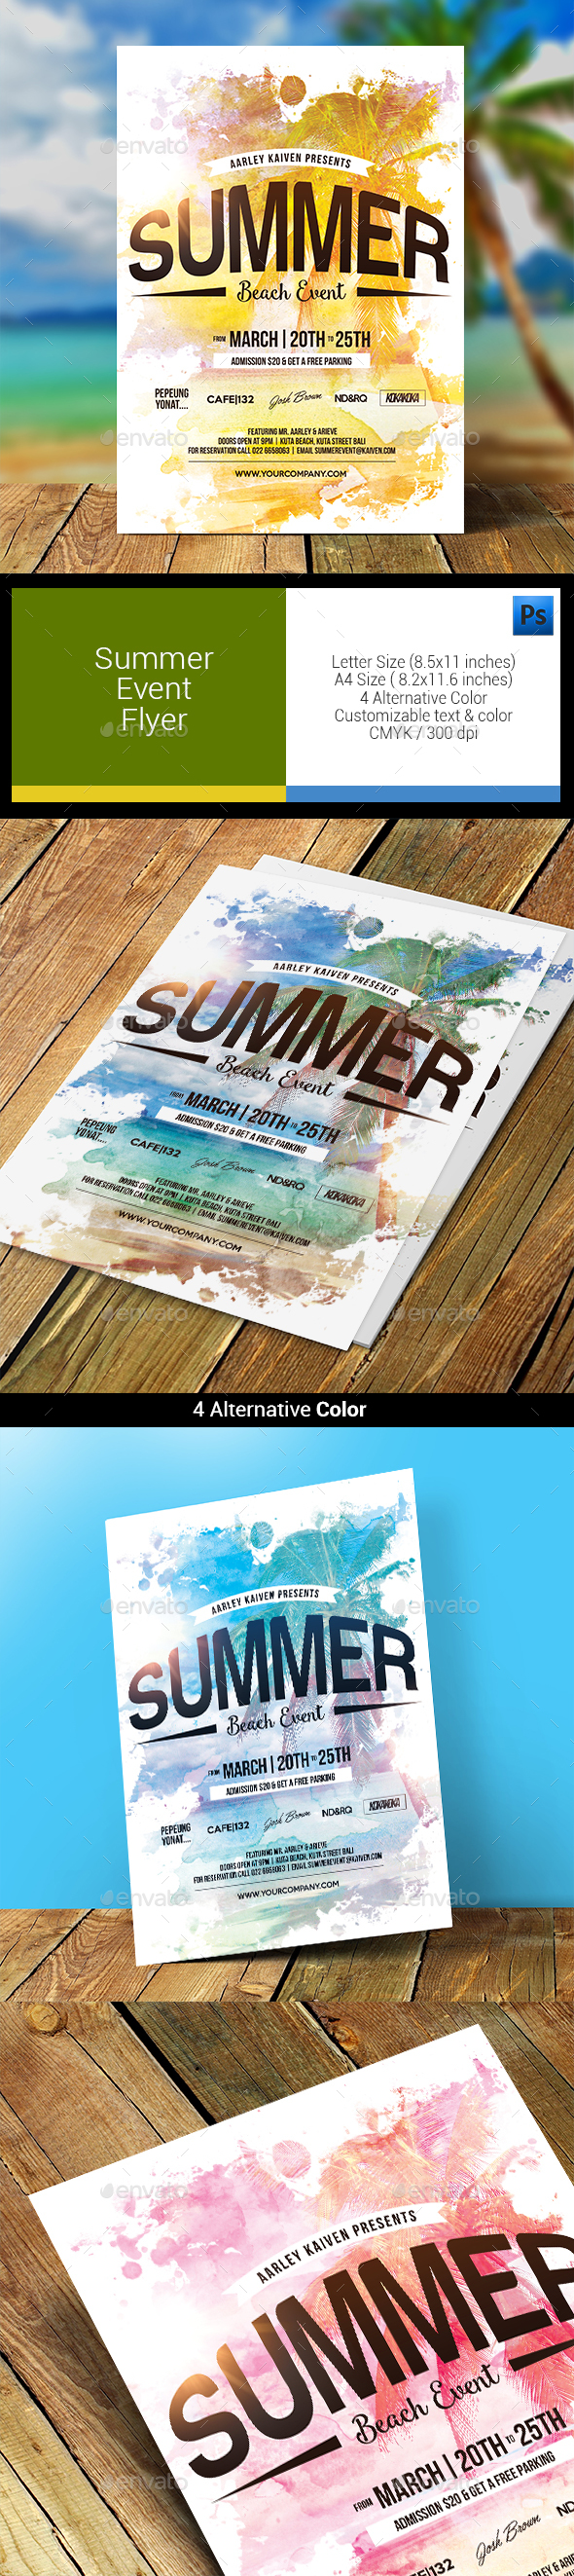 Summer Event Flyer